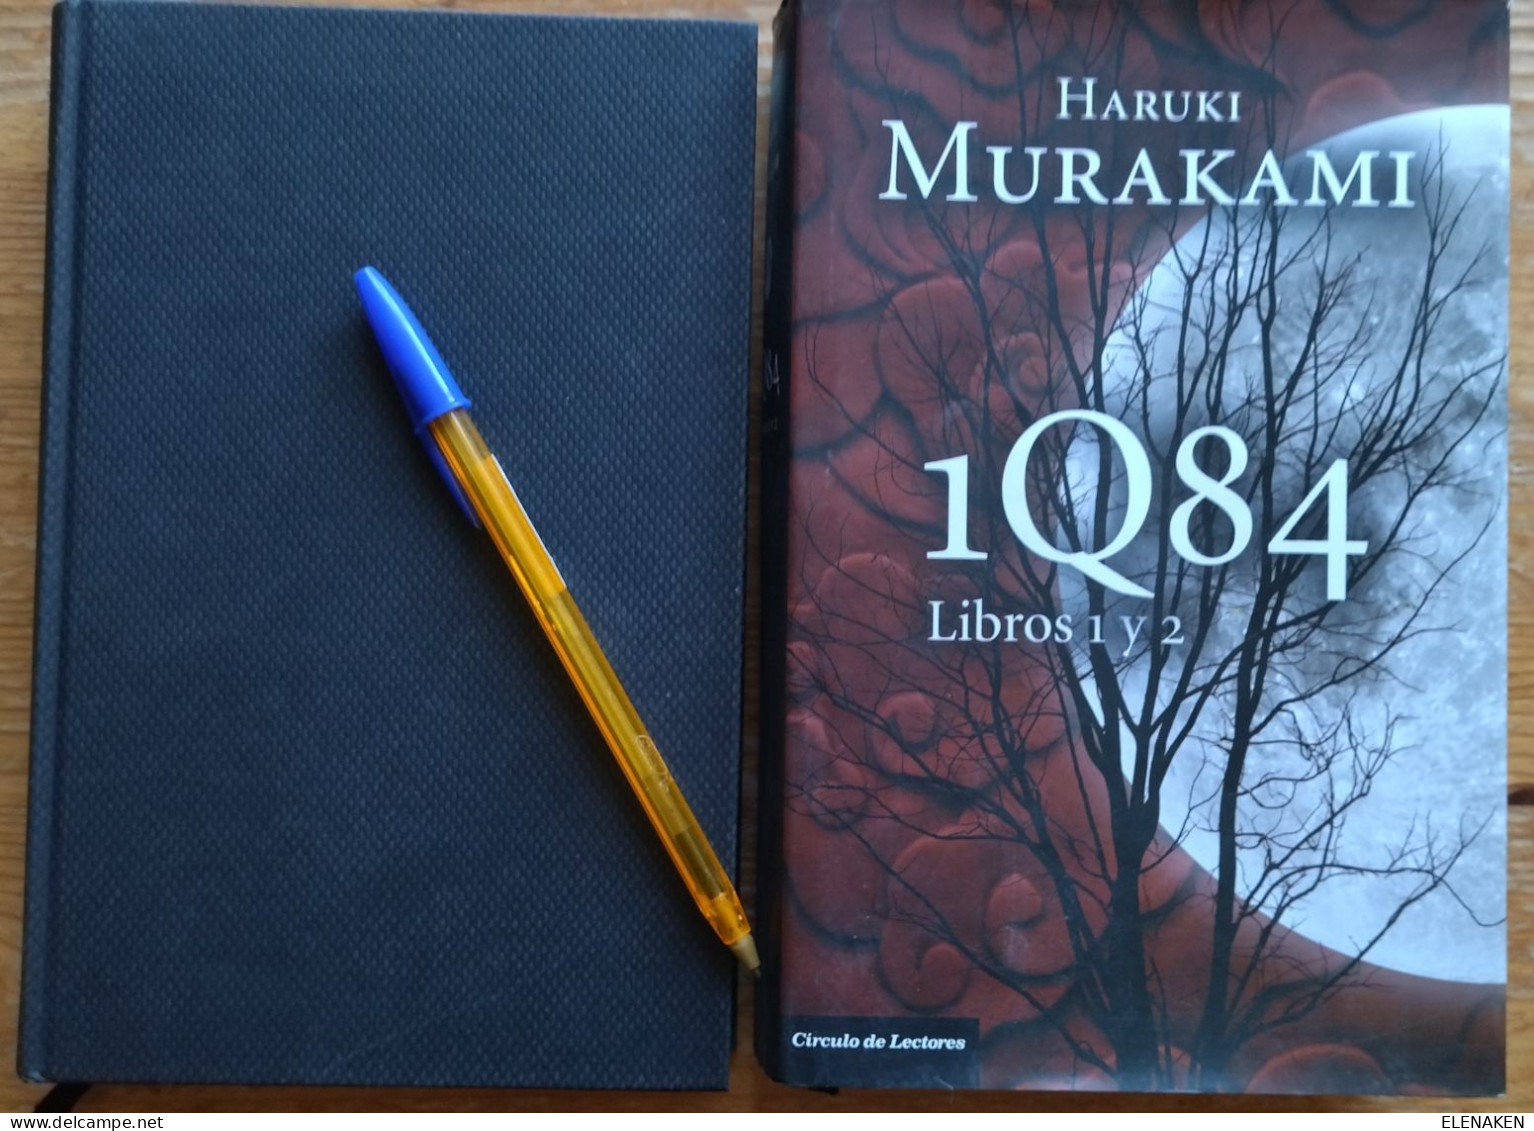 3 LIBROS Título:1Q84.  Autor:Murakami, Haruki  CIRCULO LECTORES   Año:2011  Género:Novela Japonesa Siglo XX  Páginas:874 - Ontwikkeling